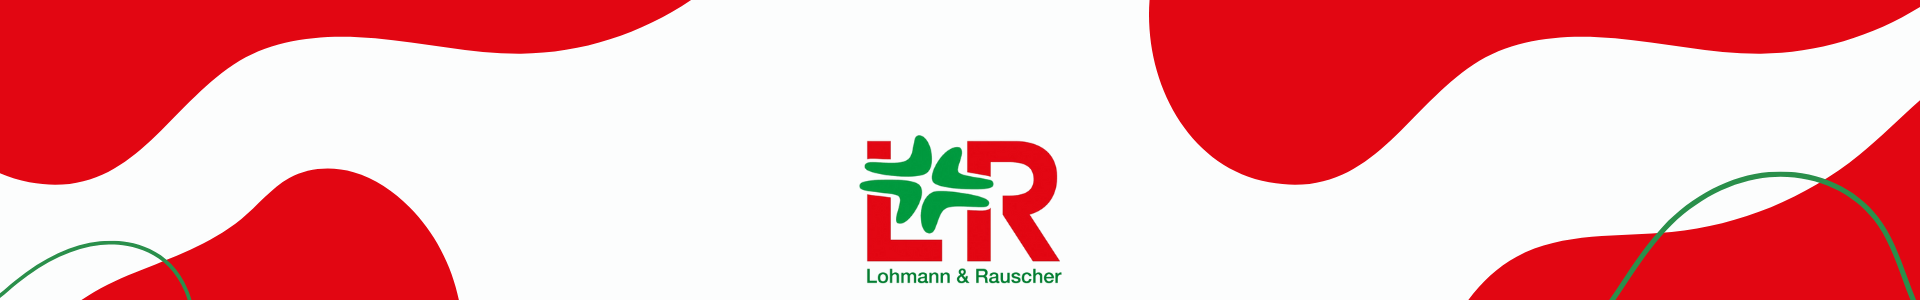 Marca Lohmann & Rauscher